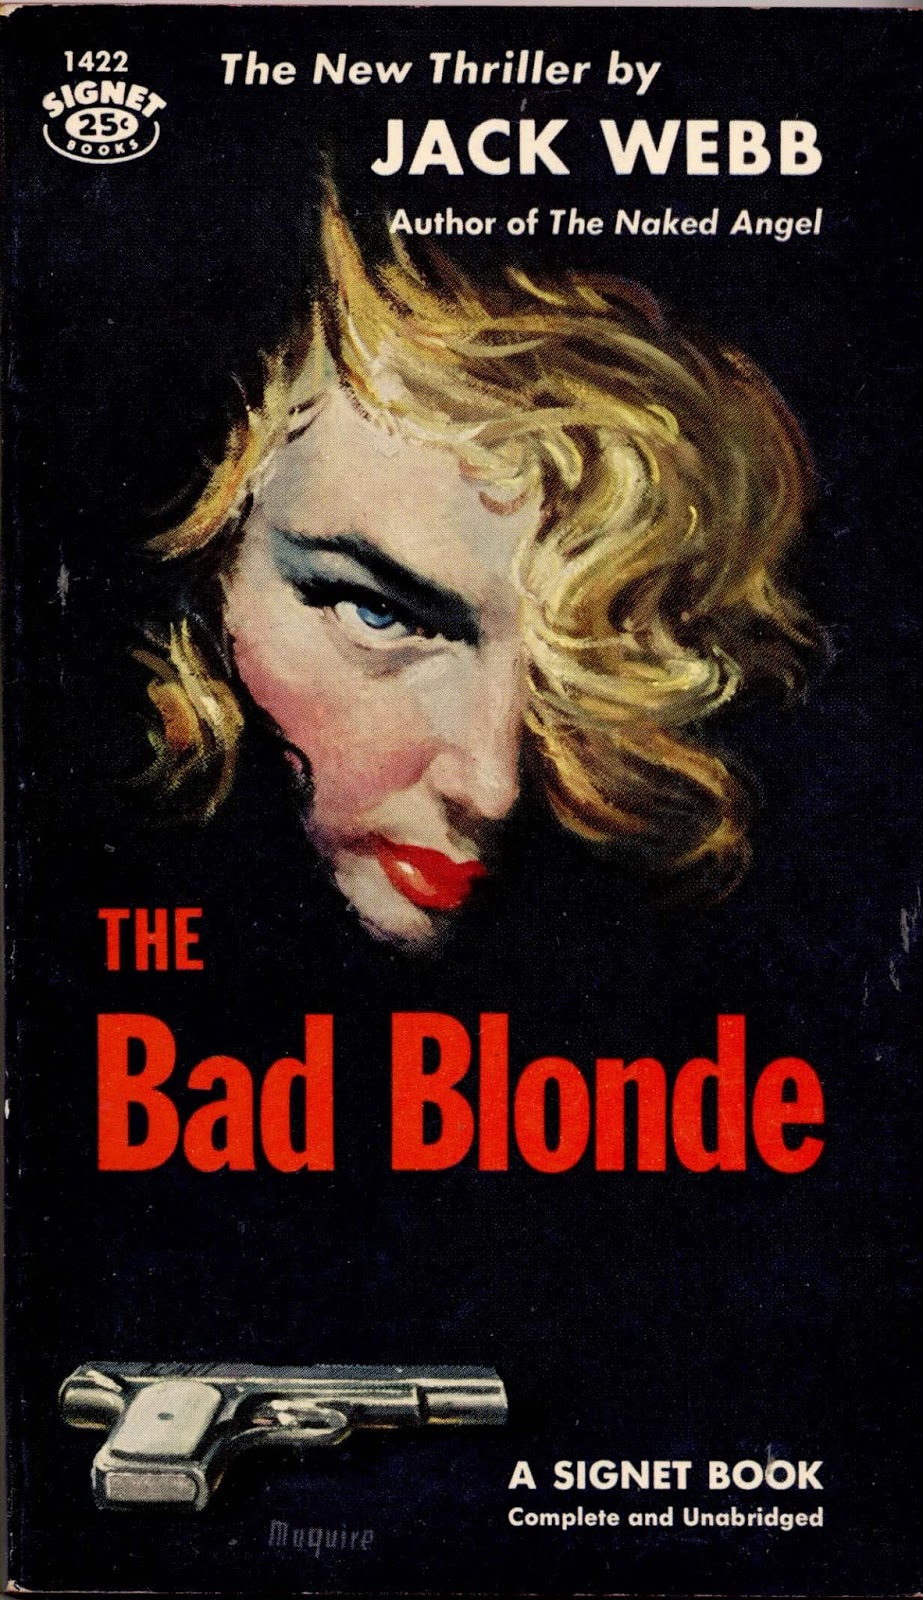 Jack Webb the Bad blonde. Bad blondie. Dead blonde обложка. Dirty blonde the Bad Plus.